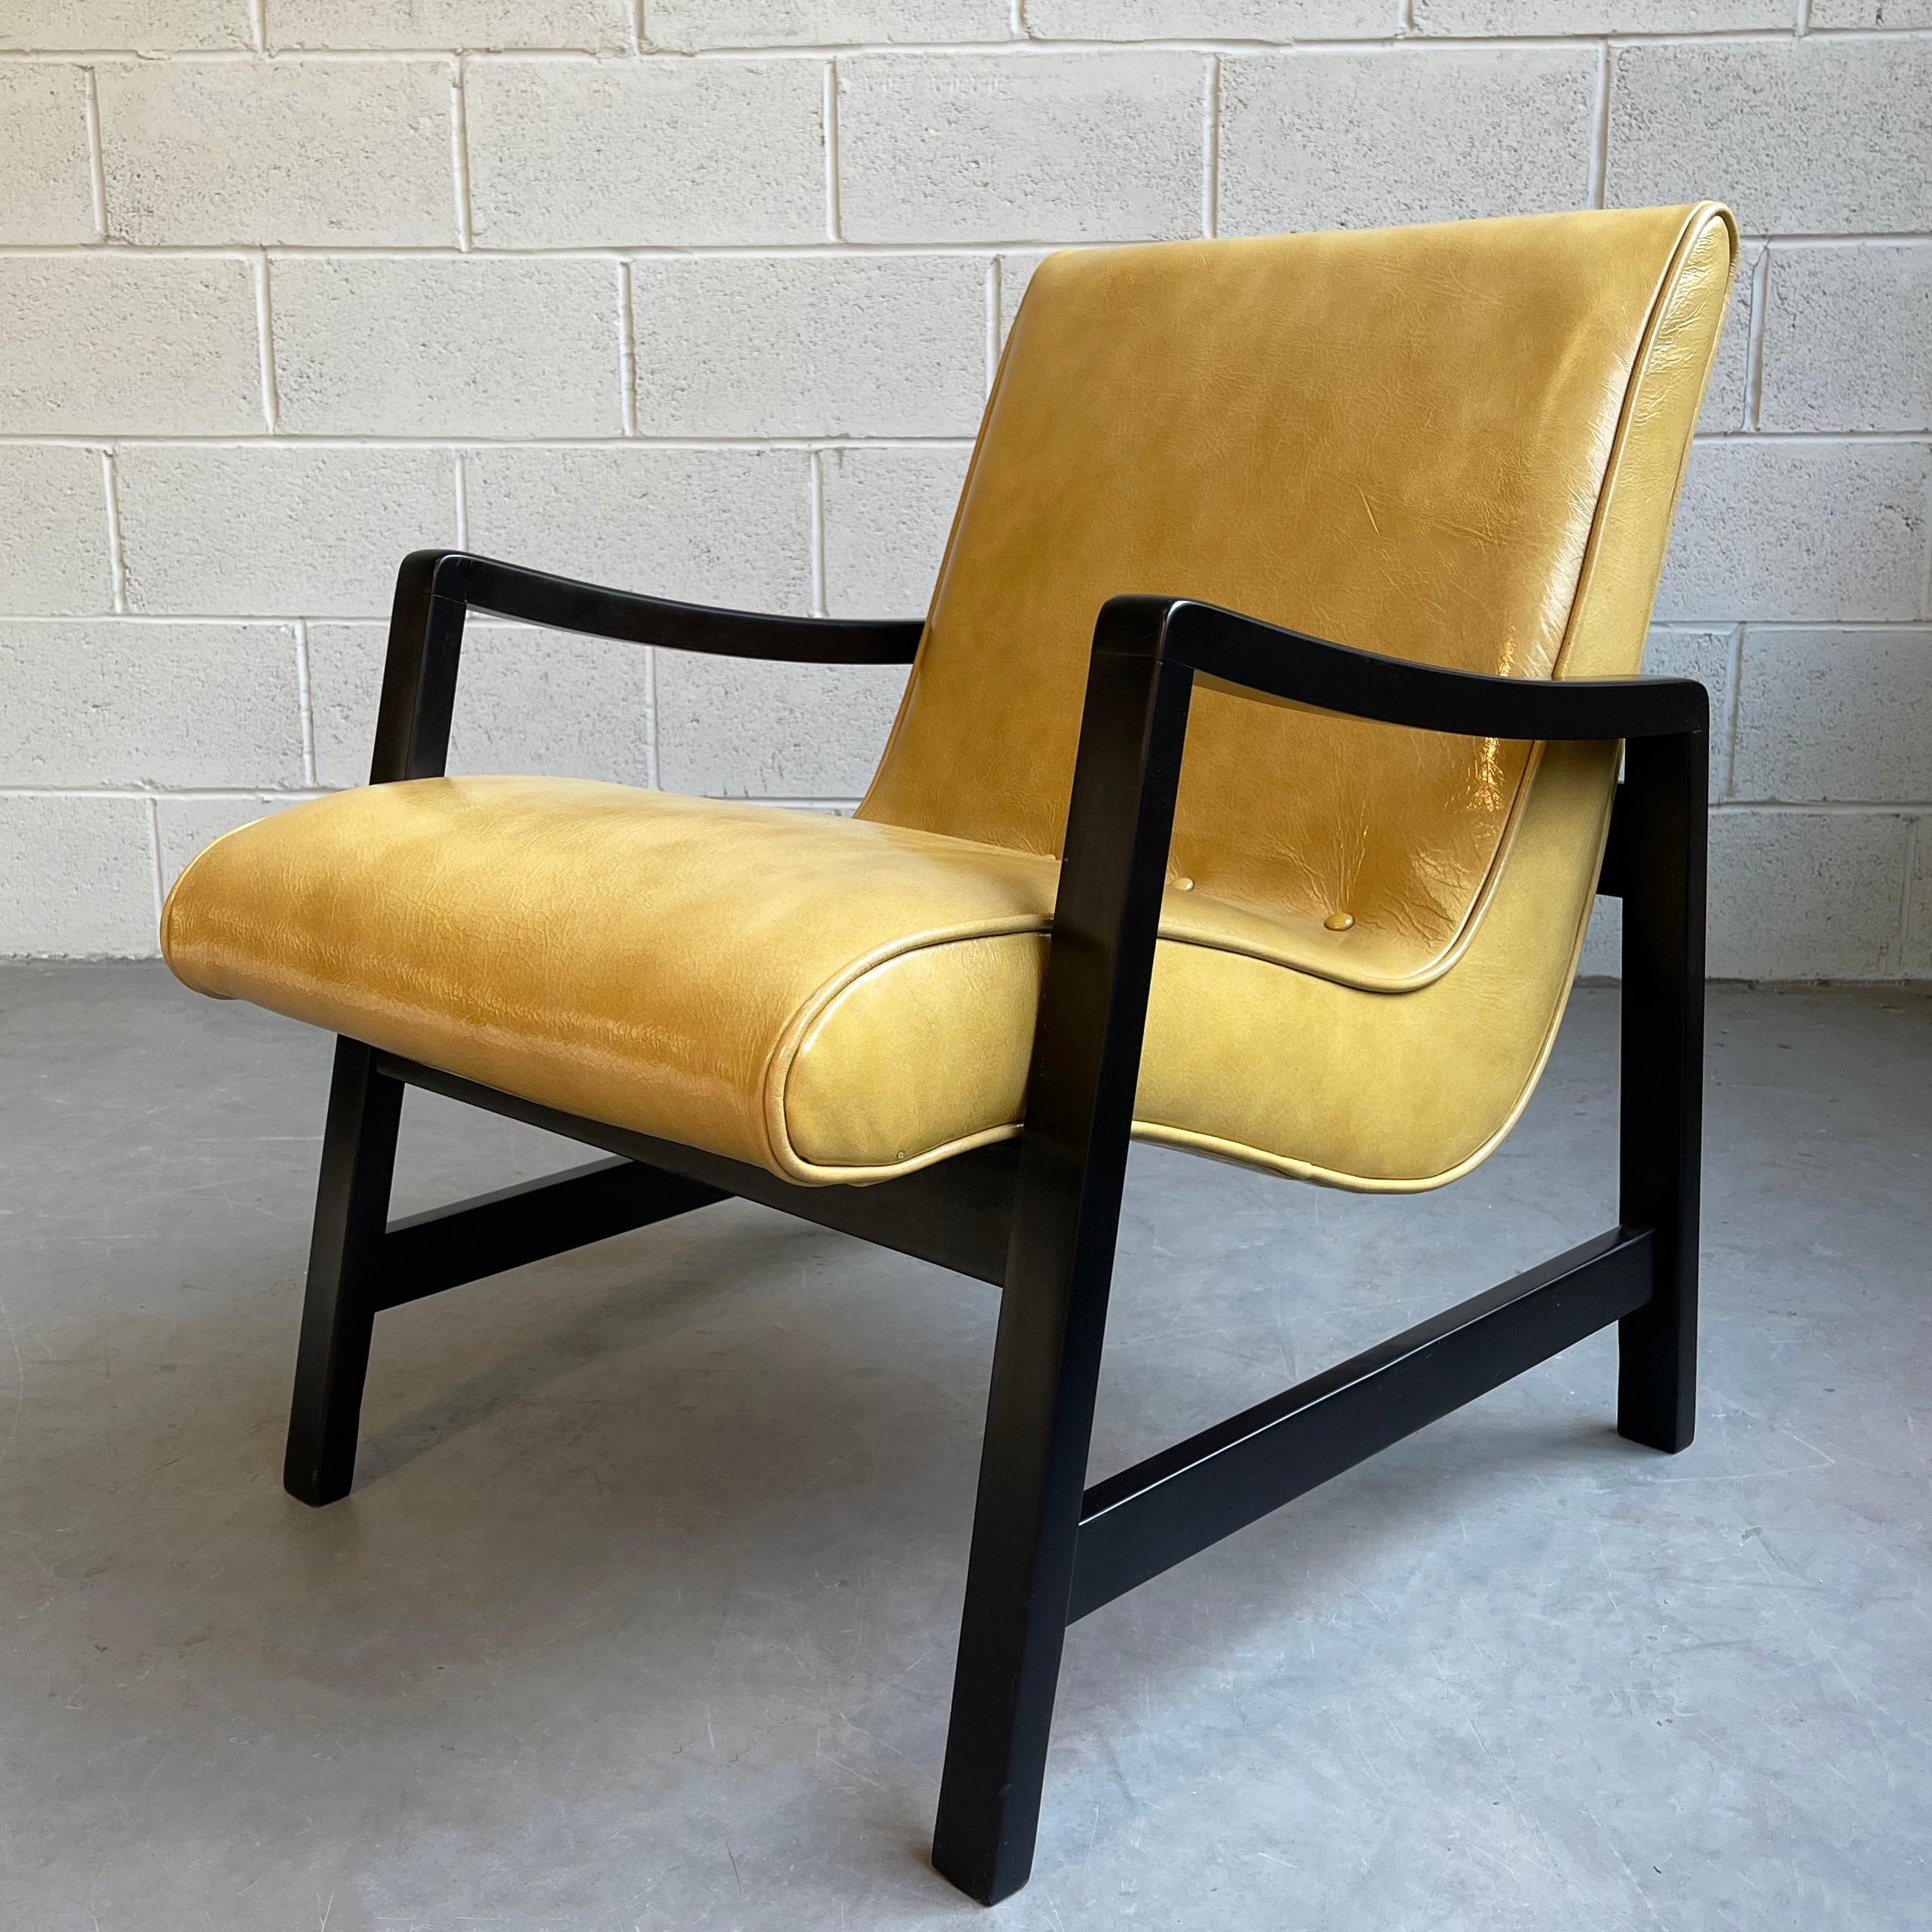 Der Mid-Century Modern Sessel von Jens Risom für Knoll besteht aus einem minimalistischen, schwarz lackierten Ahorngestell mit einer schwebenden Sitzfläche, die mit senfgelbem, strukturiertem Leder gepolstert ist.